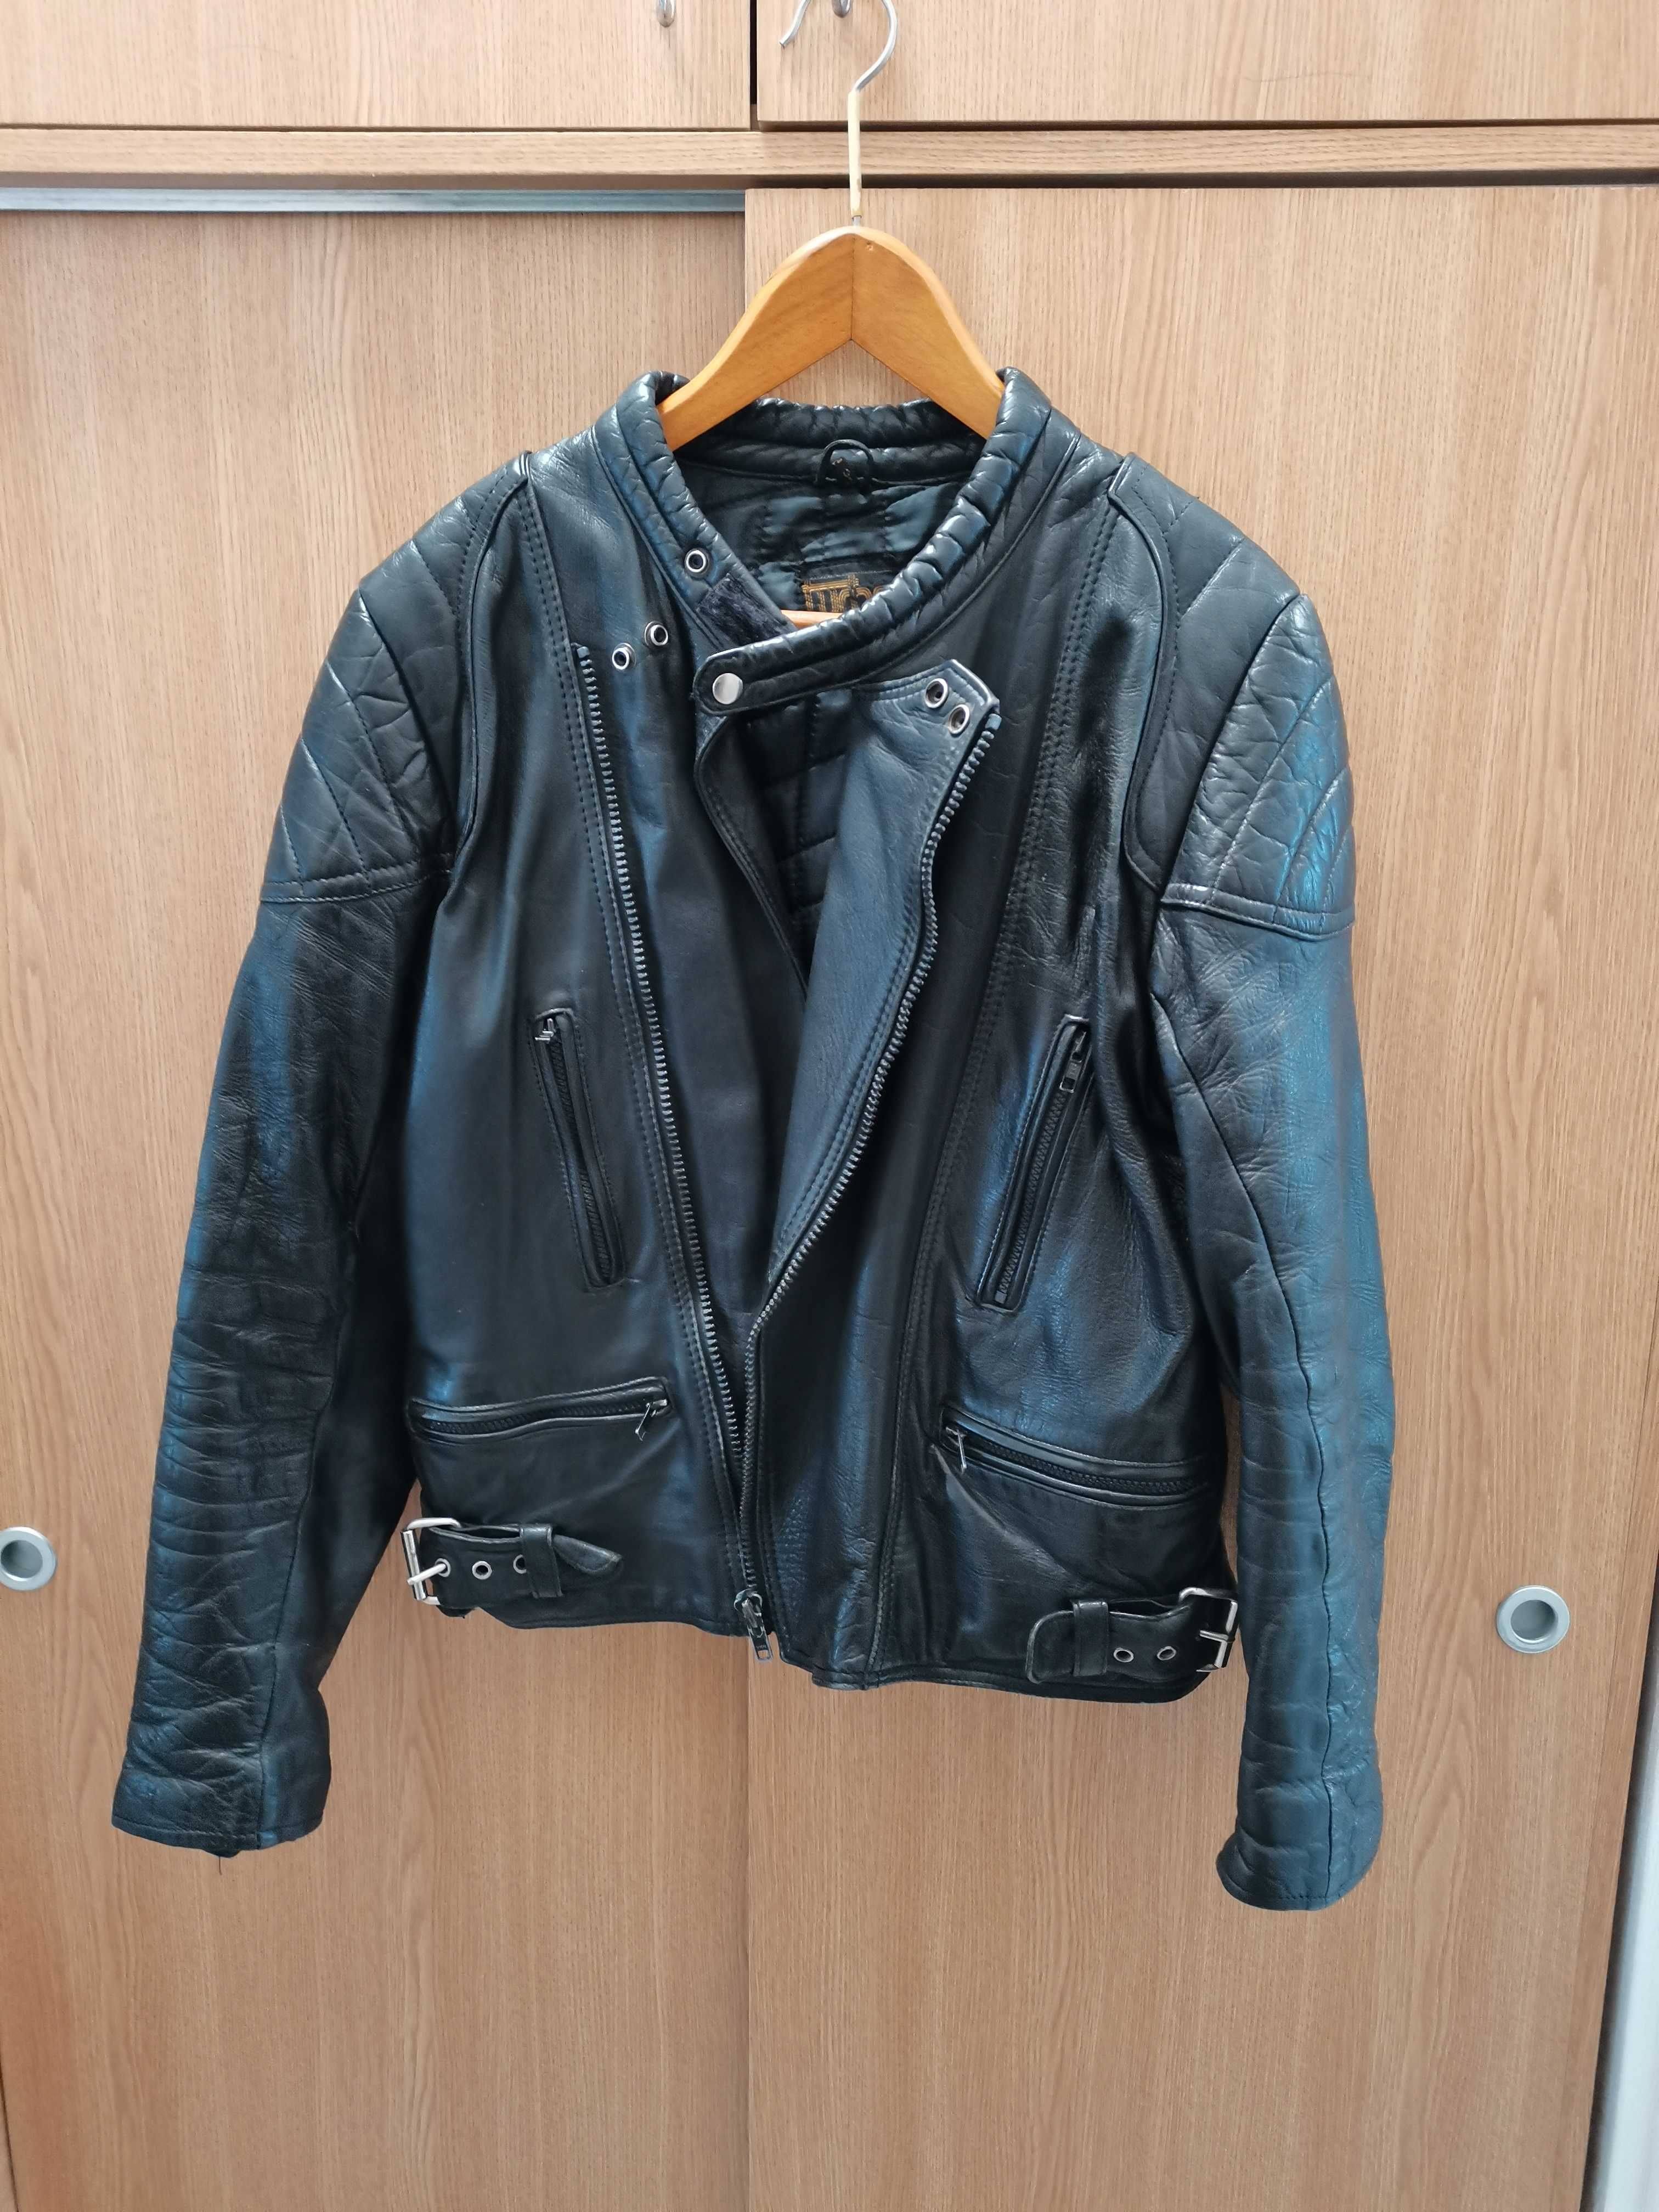 Jachetă biker din piele naturală (geacă biker, motociclist) 44-46